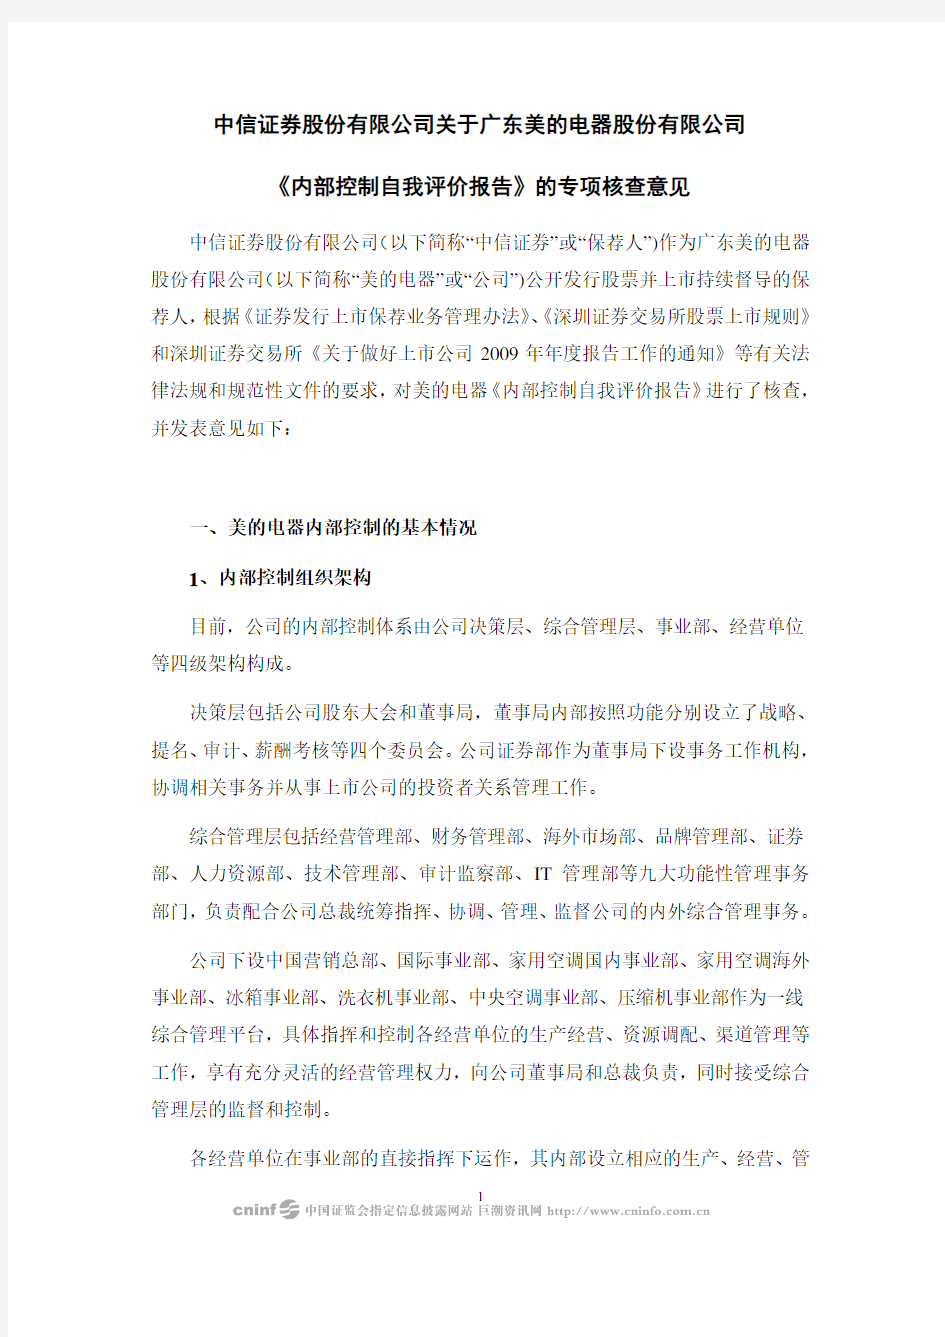 中信证券股份有限公司关于广东美的电器股份有限公司